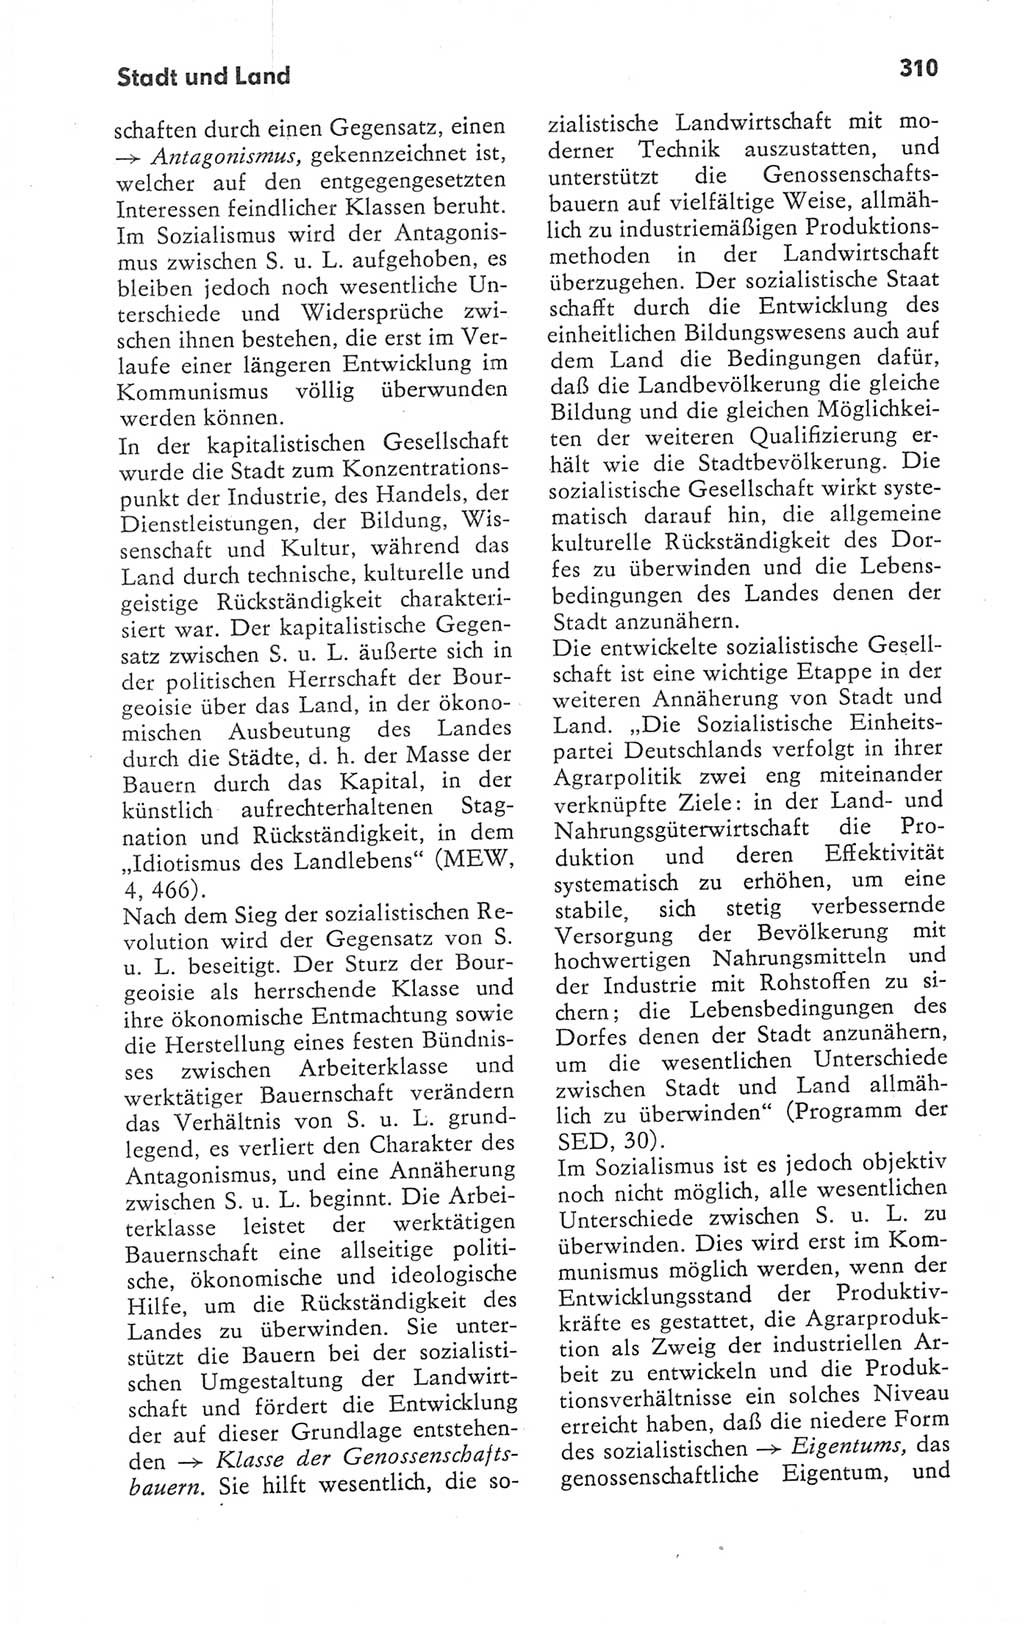 Kleines Wörterbuch der marxistisch-leninistischen Philosophie [Deutsche Demokratische Republik (DDR)] 1979, Seite 310 (Kl. Wb. ML Phil. DDR 1979, S. 310)